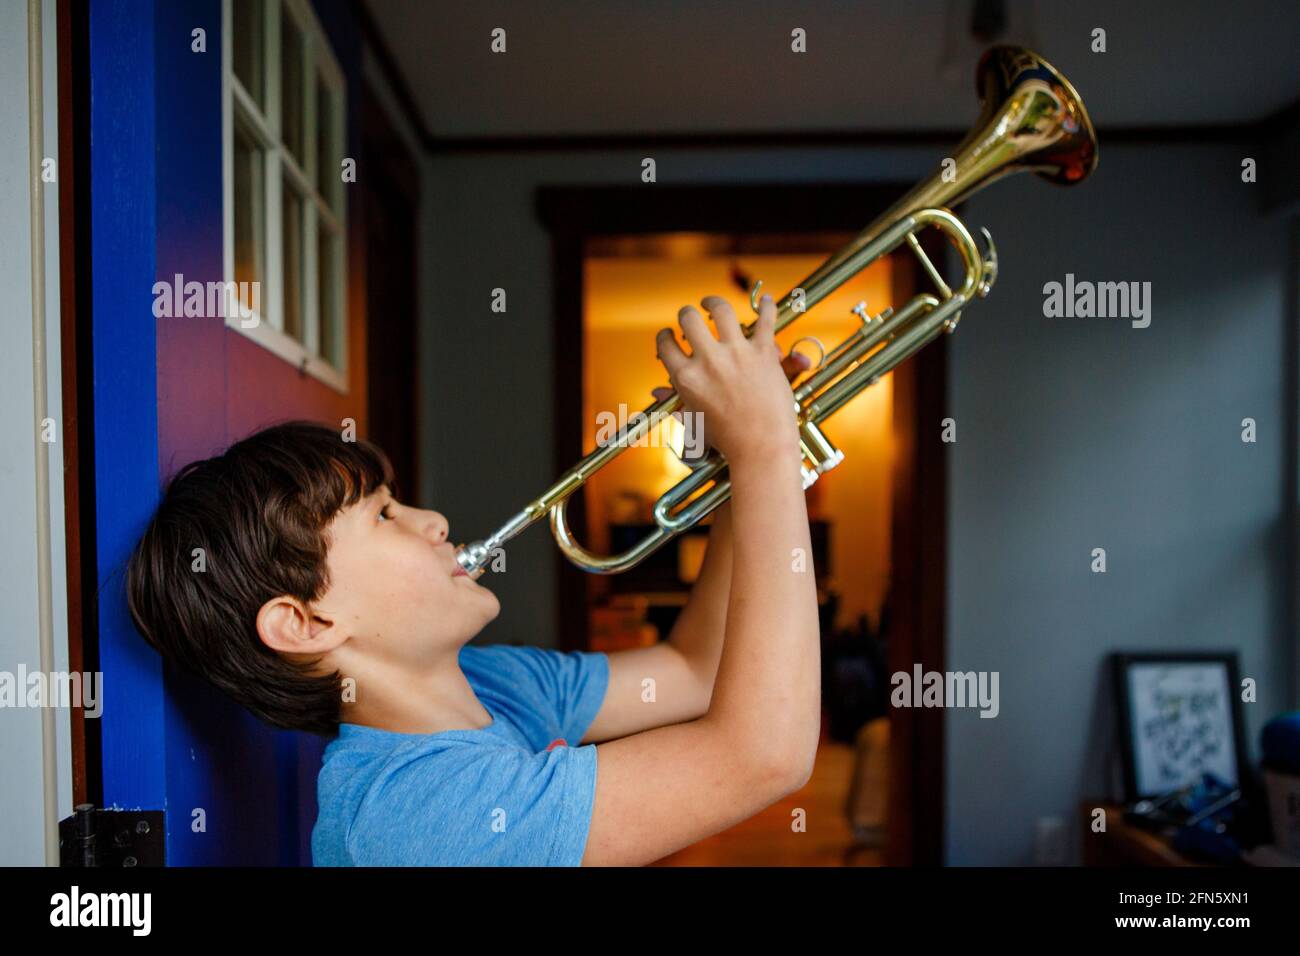 Un garçon se tient dans une porte ouverte colorée jouant un trompette Banque D'Images